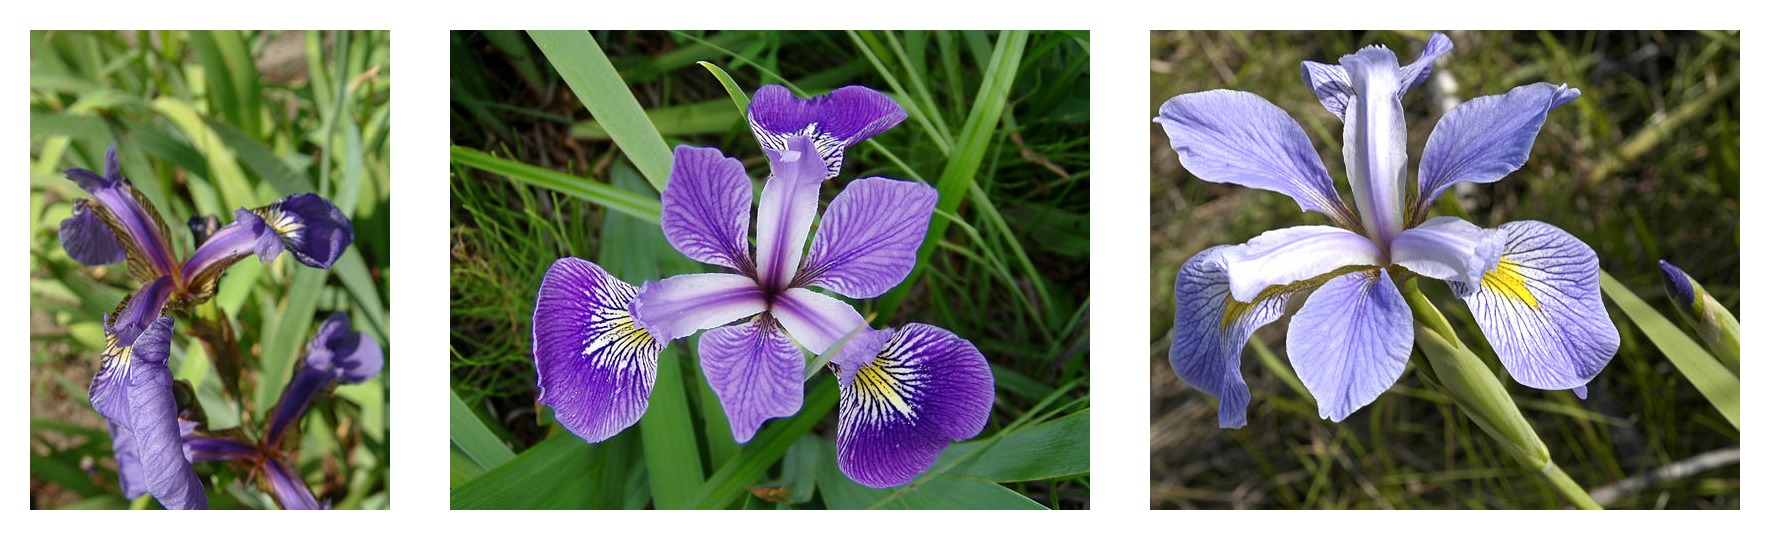 Géométrie des pétales comparée pour trois espèces d'iris : Iris setosa, Iris virginica et Iris versicolor